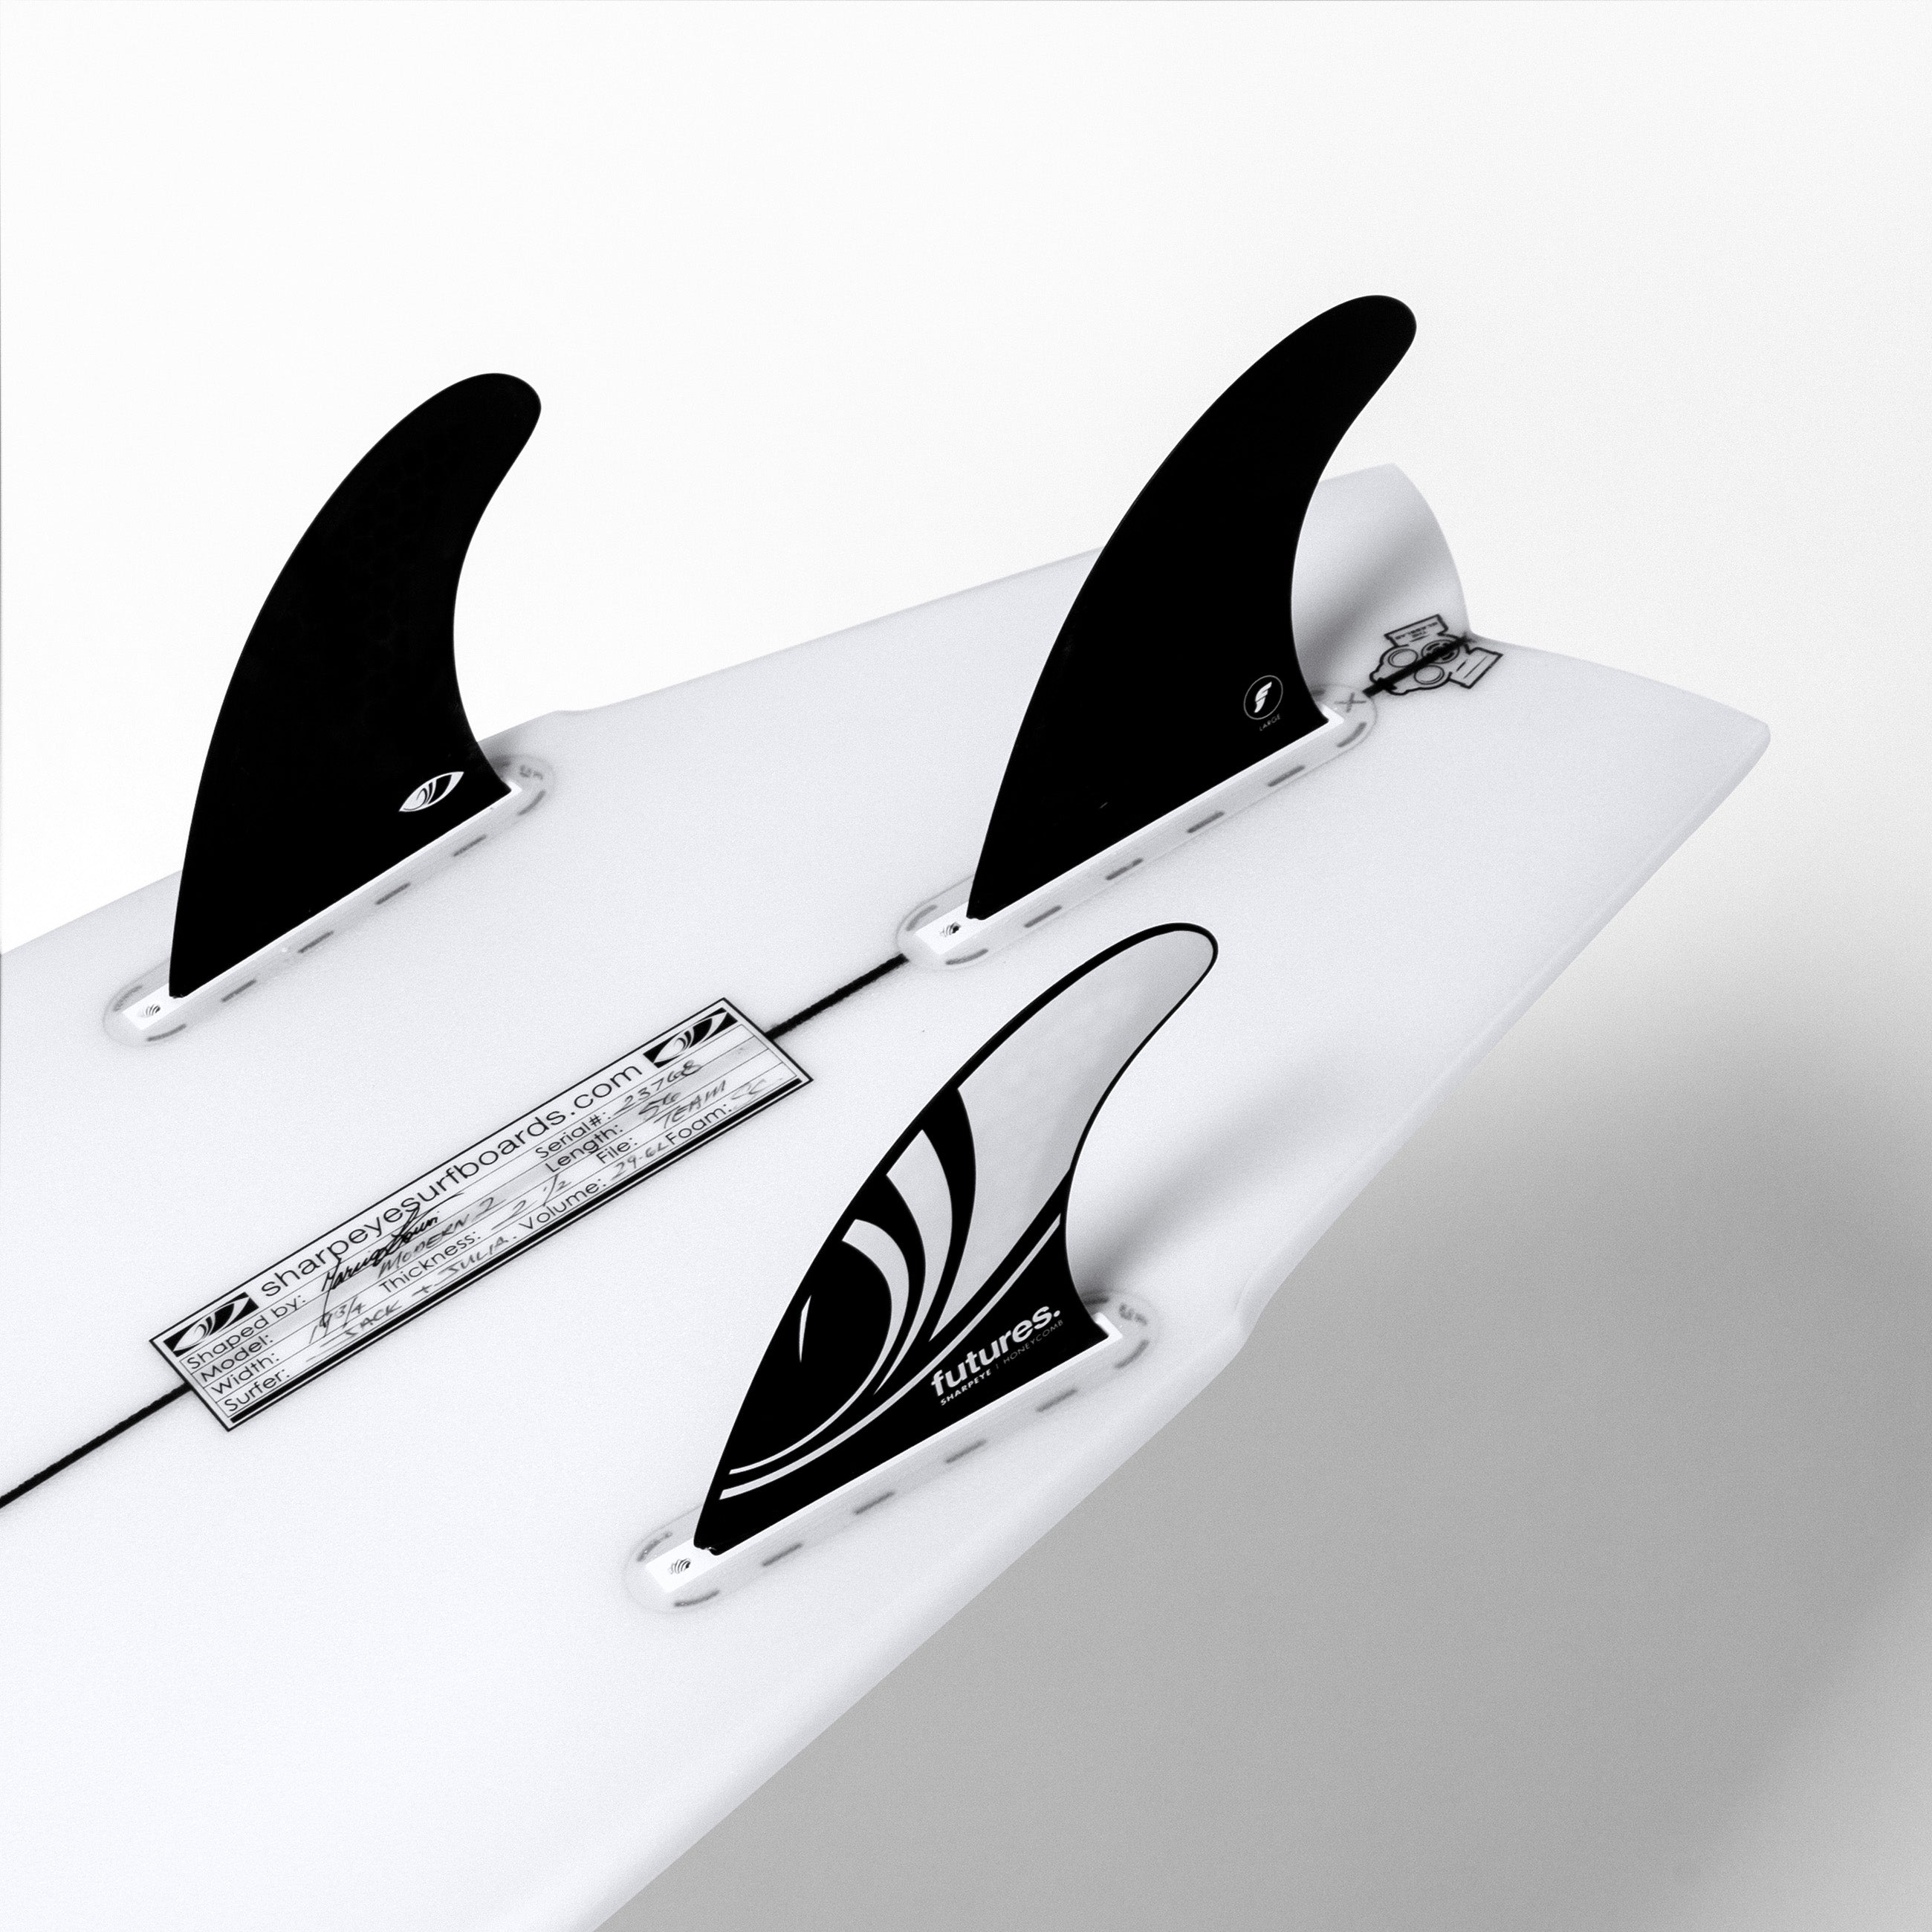 MODERN 2 – Sharp Eye Surfboards